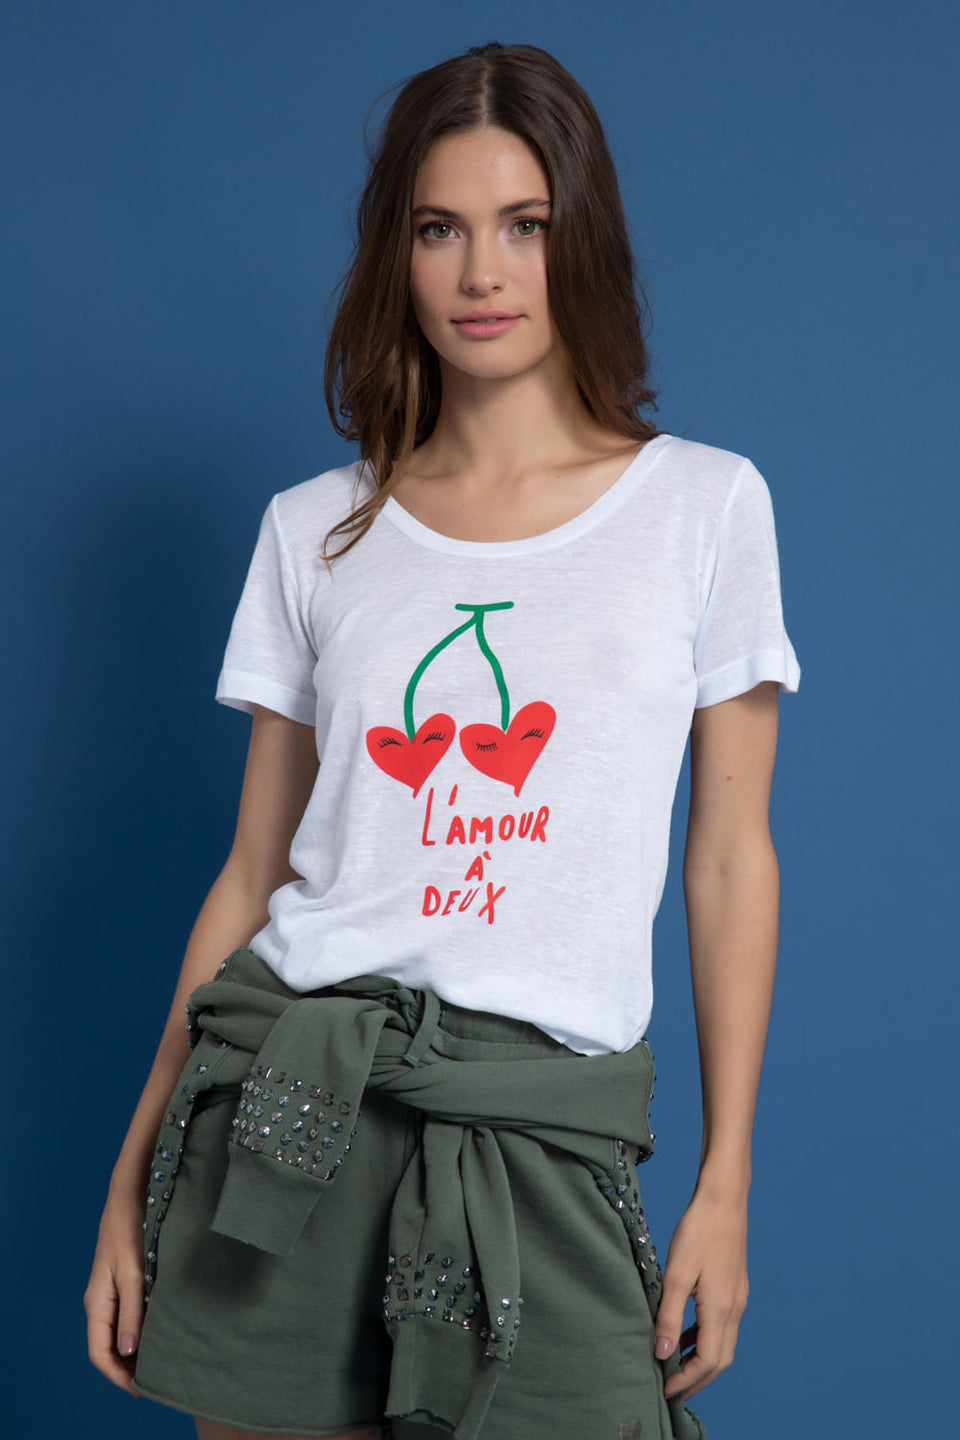 Camiseta L'amour A Deux Branco